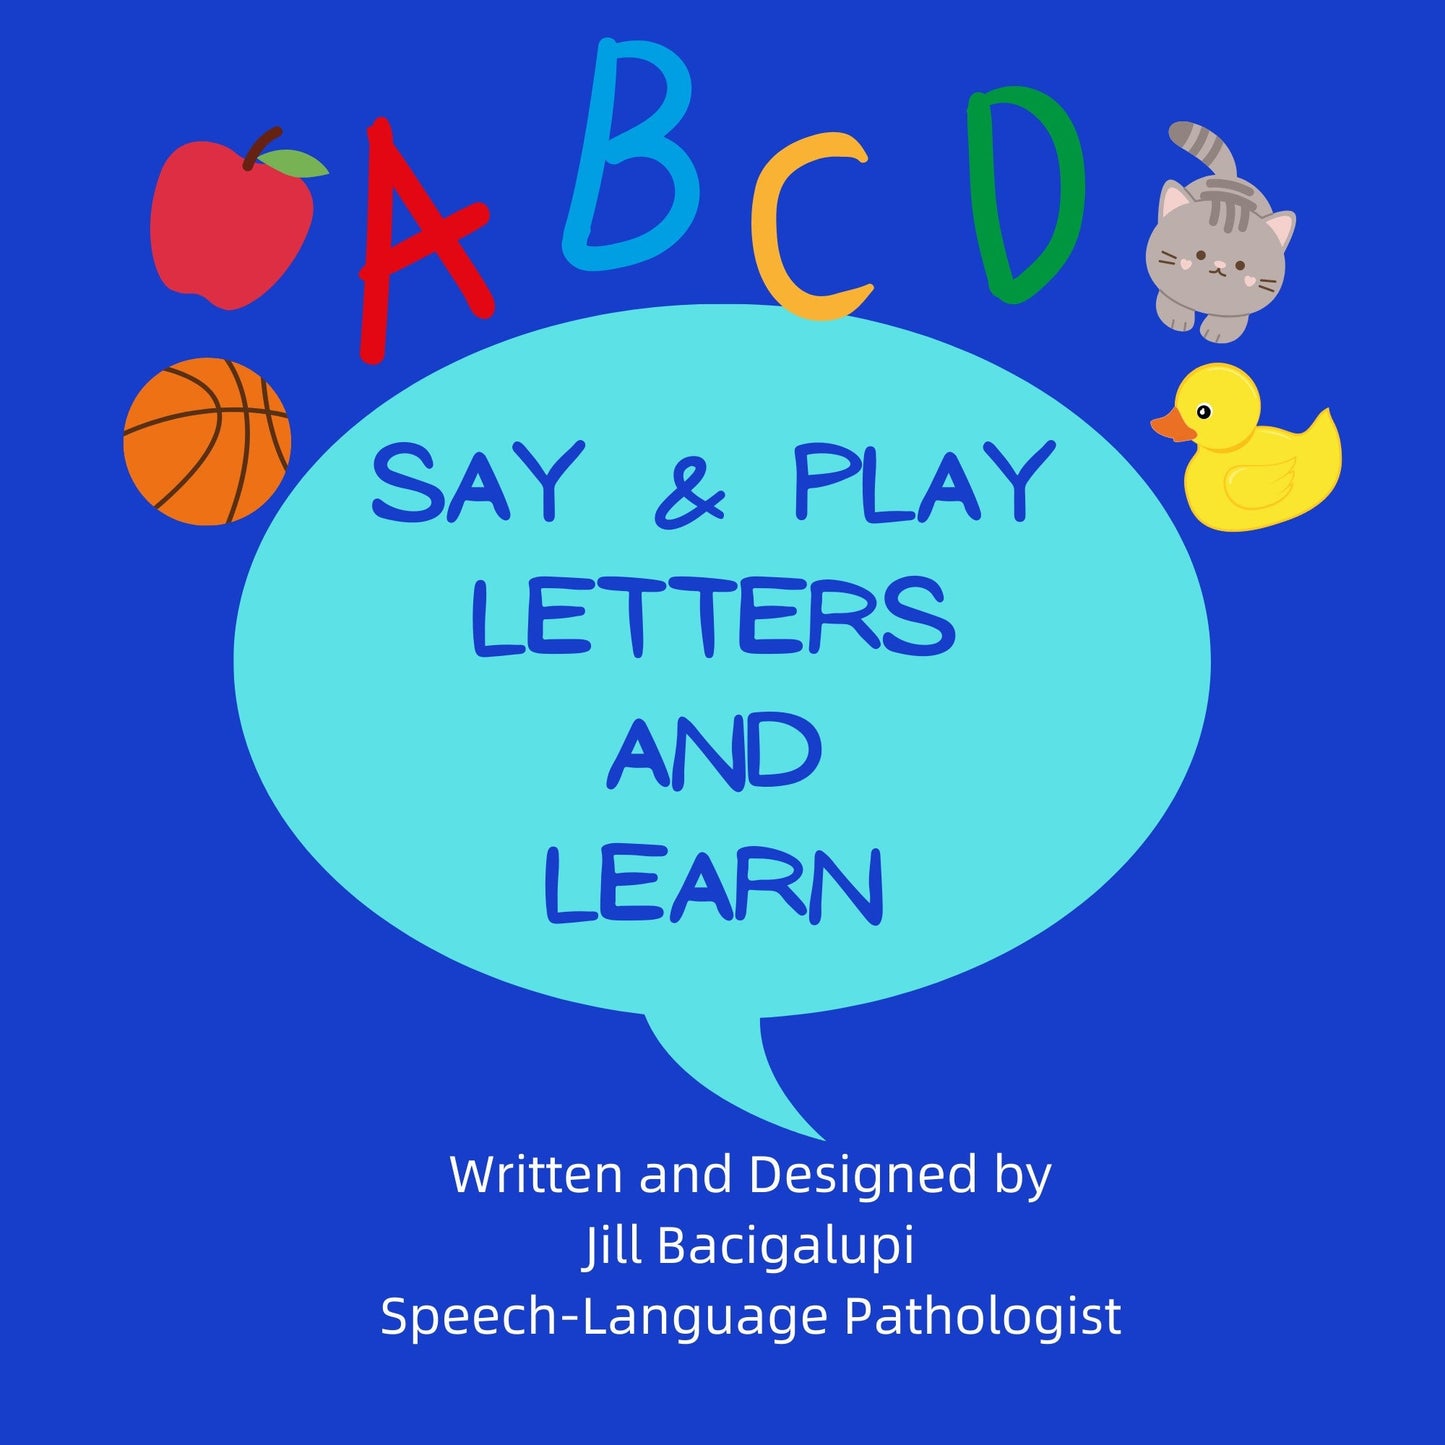 El Libro del Abecedario con Objetos-Objetos del Alfabeto-Aprende el Alfabeto